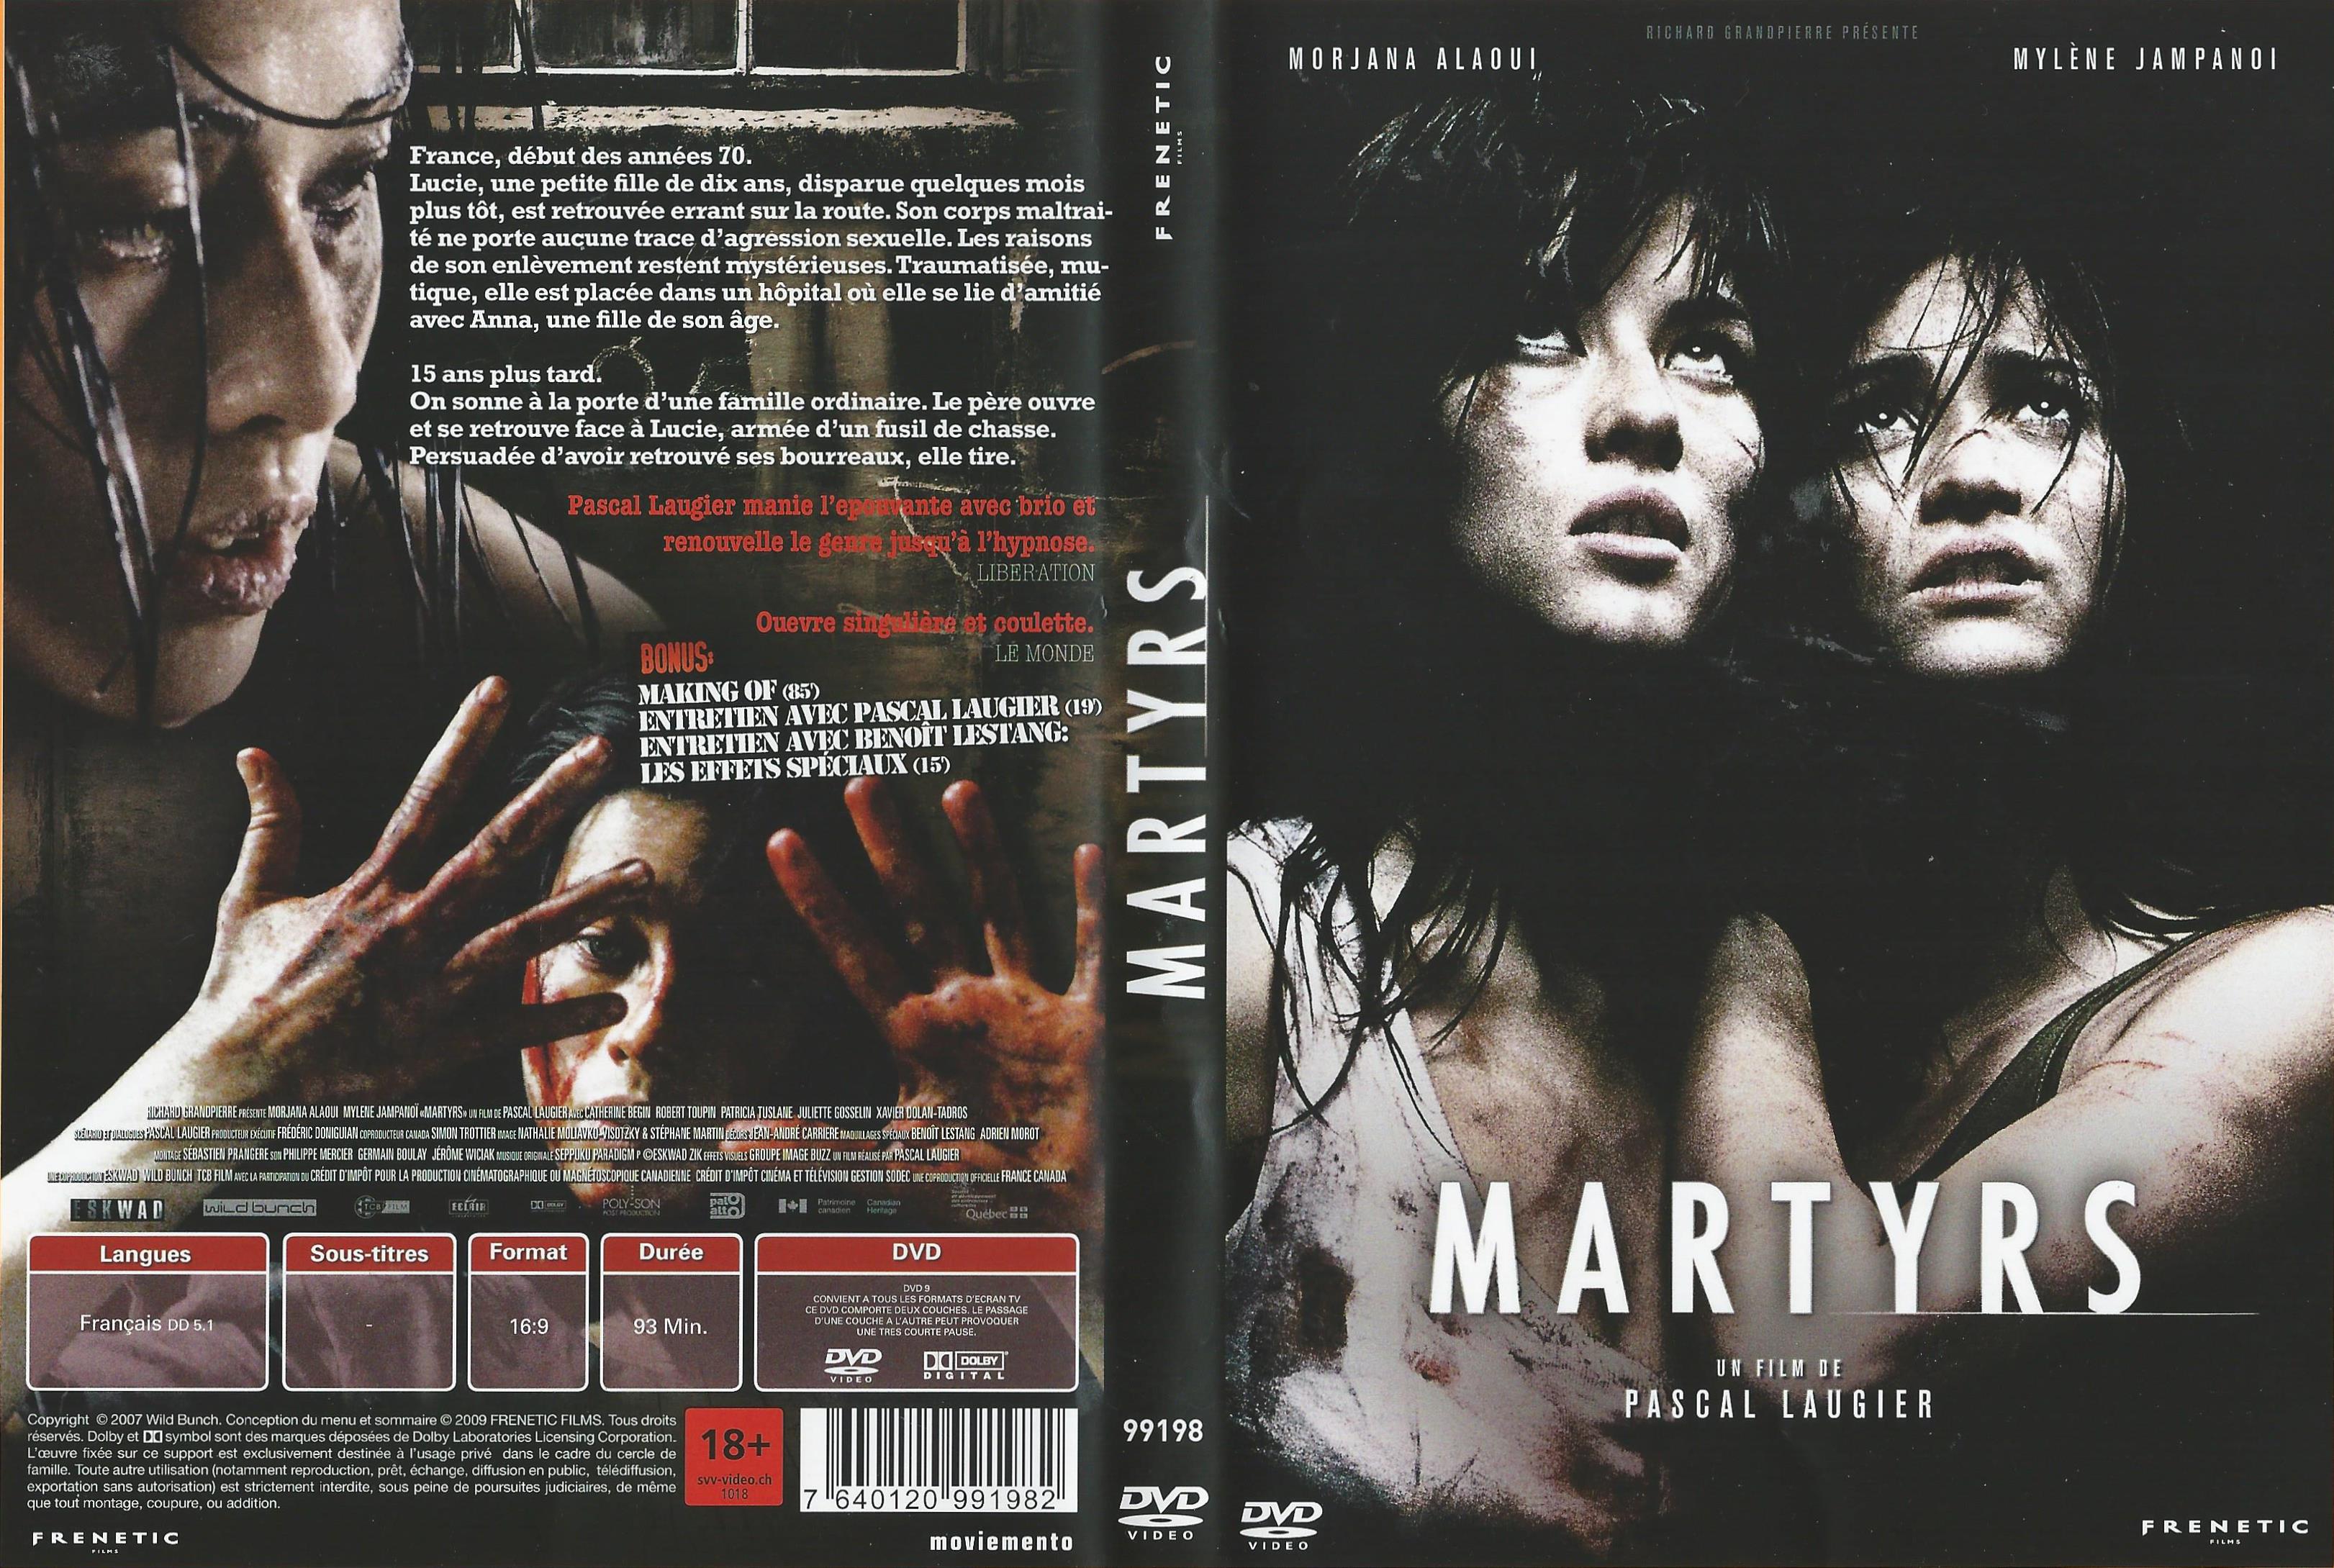 Jaquette DVD Martyrs v2